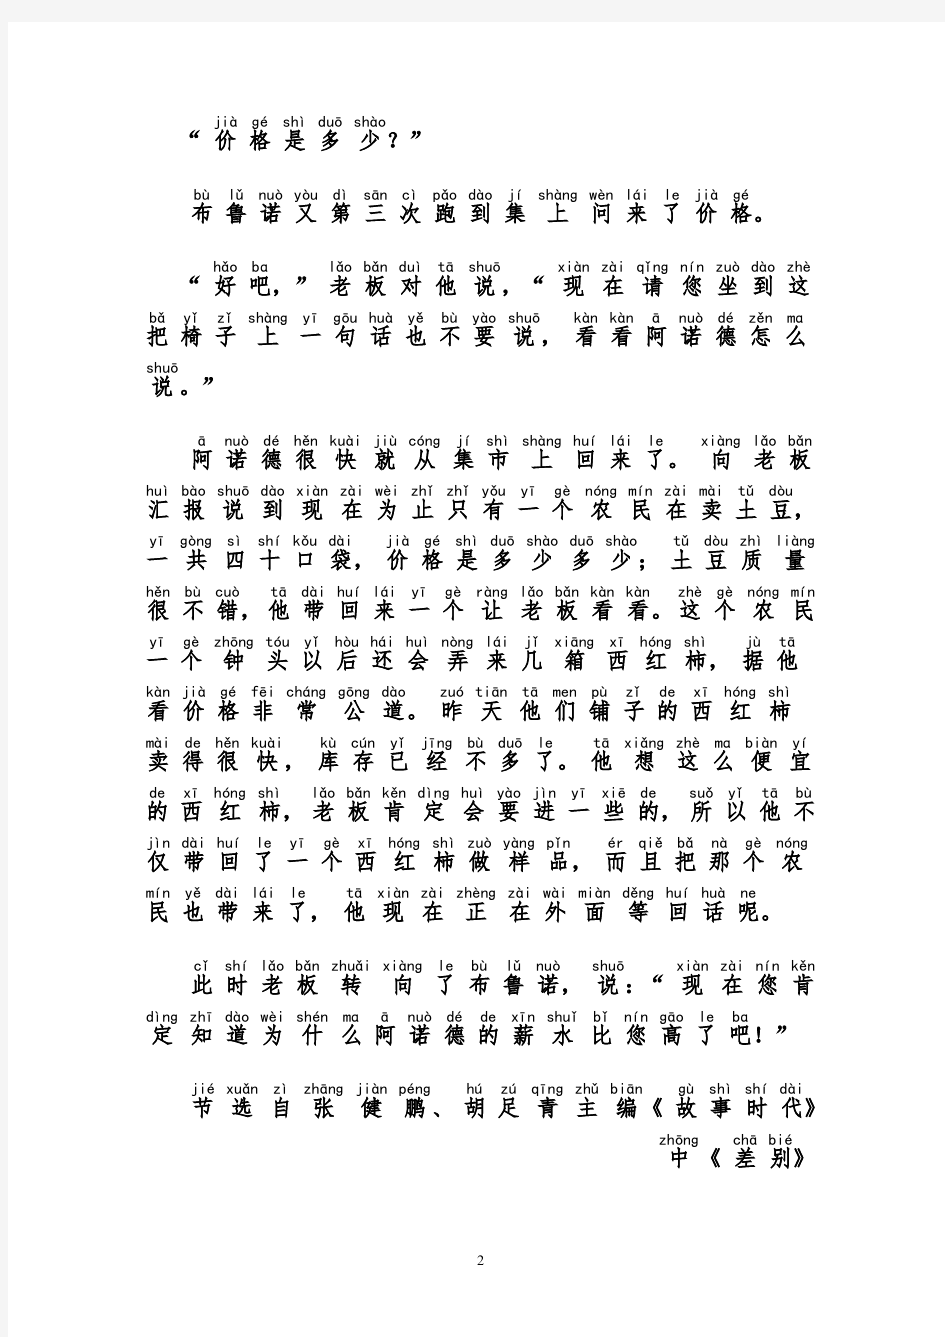 最新版贵州普通话朗读范文1-46篇 拼音版